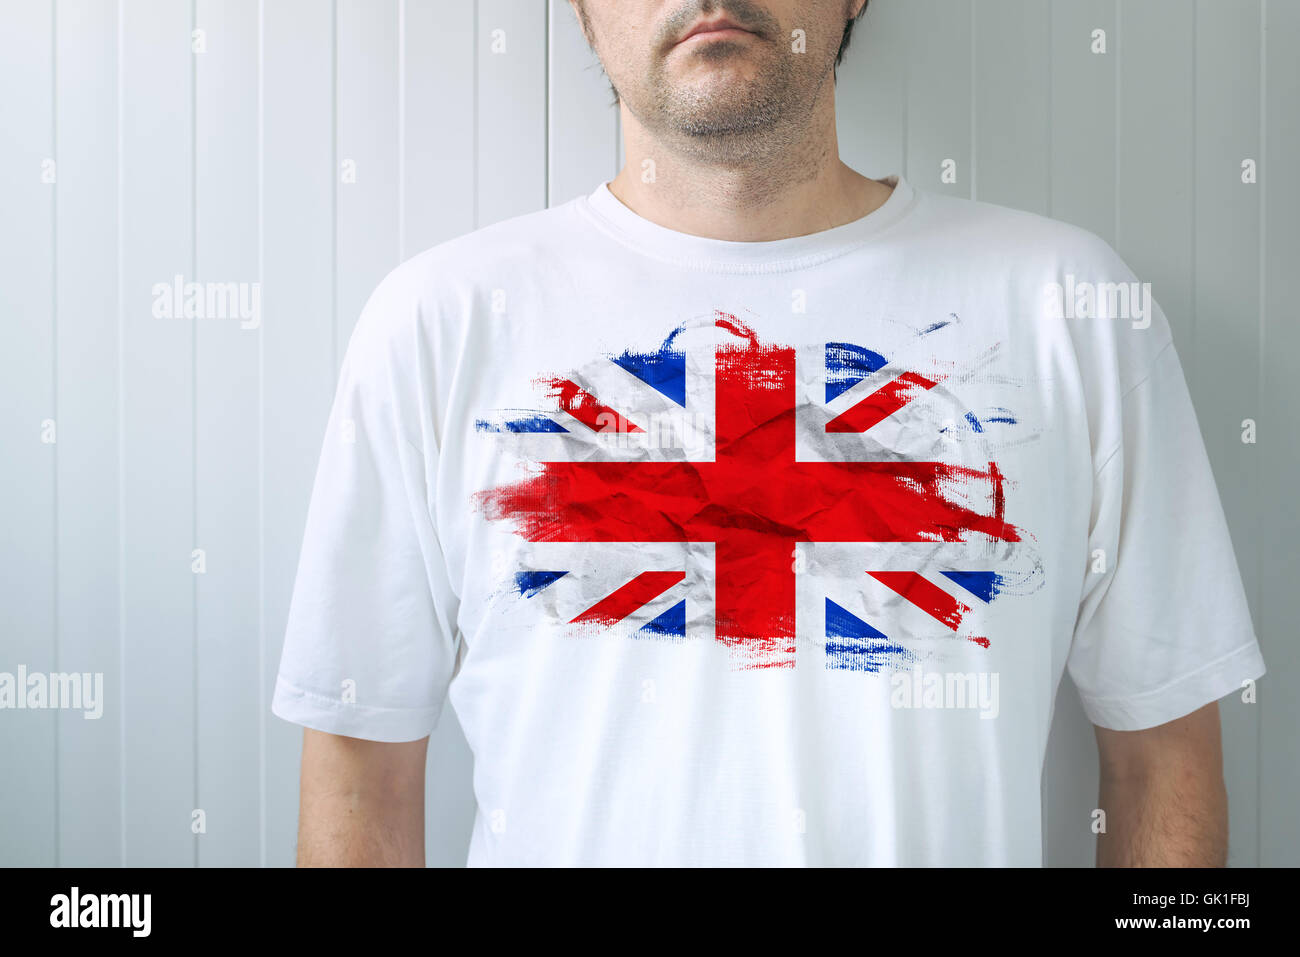 Hombre vestido con camisa blanca con bandera del Reino Unido imprimir, macho adulto persona apoyando a Gran Bretaña Foto de stock